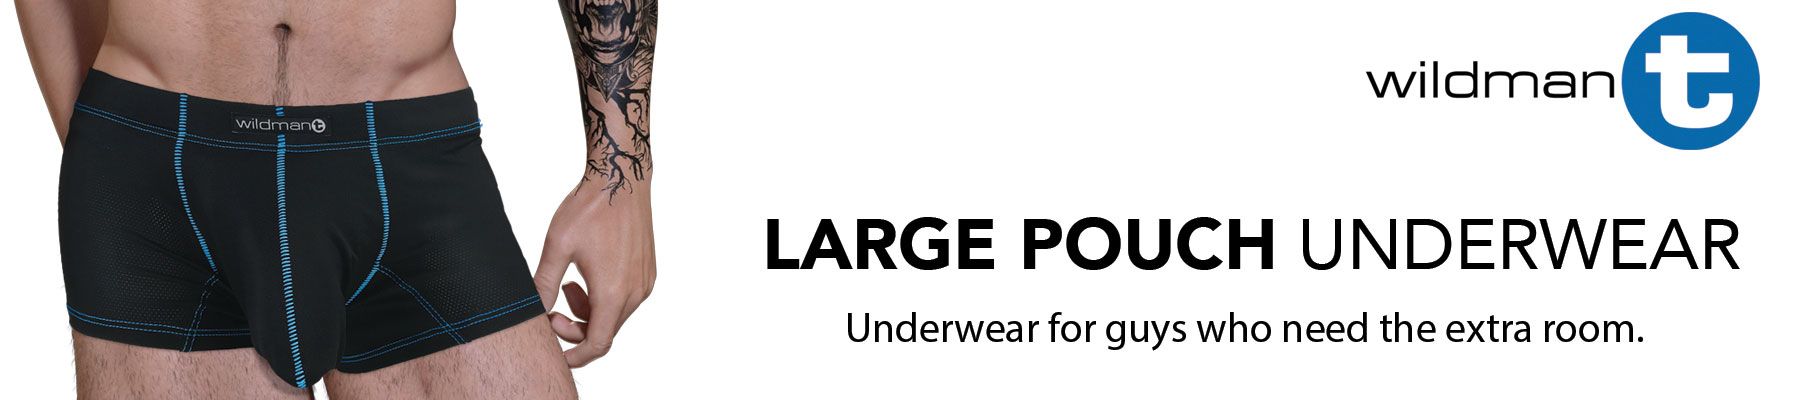 Large Pouch Underwear – WildmanT